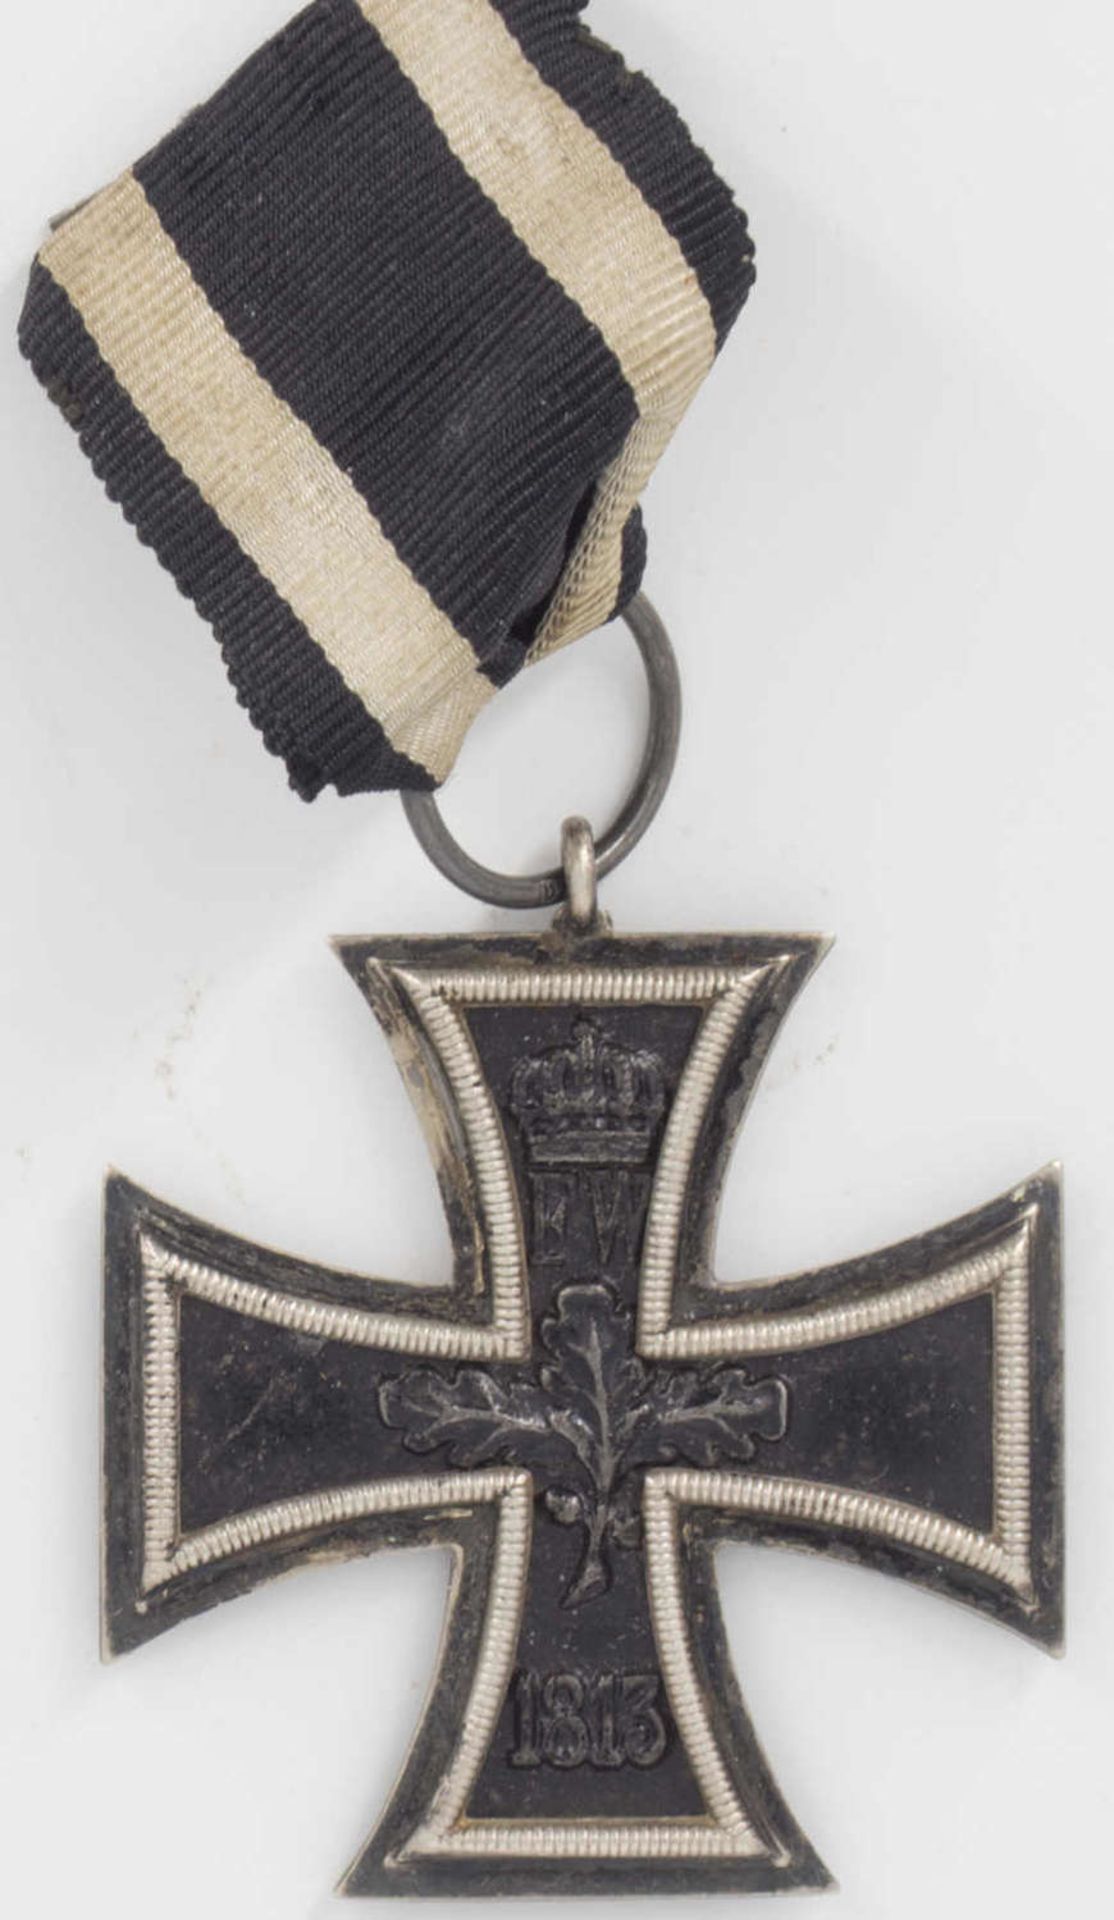 Iron cross 2nd class on a ribbon, 1914.